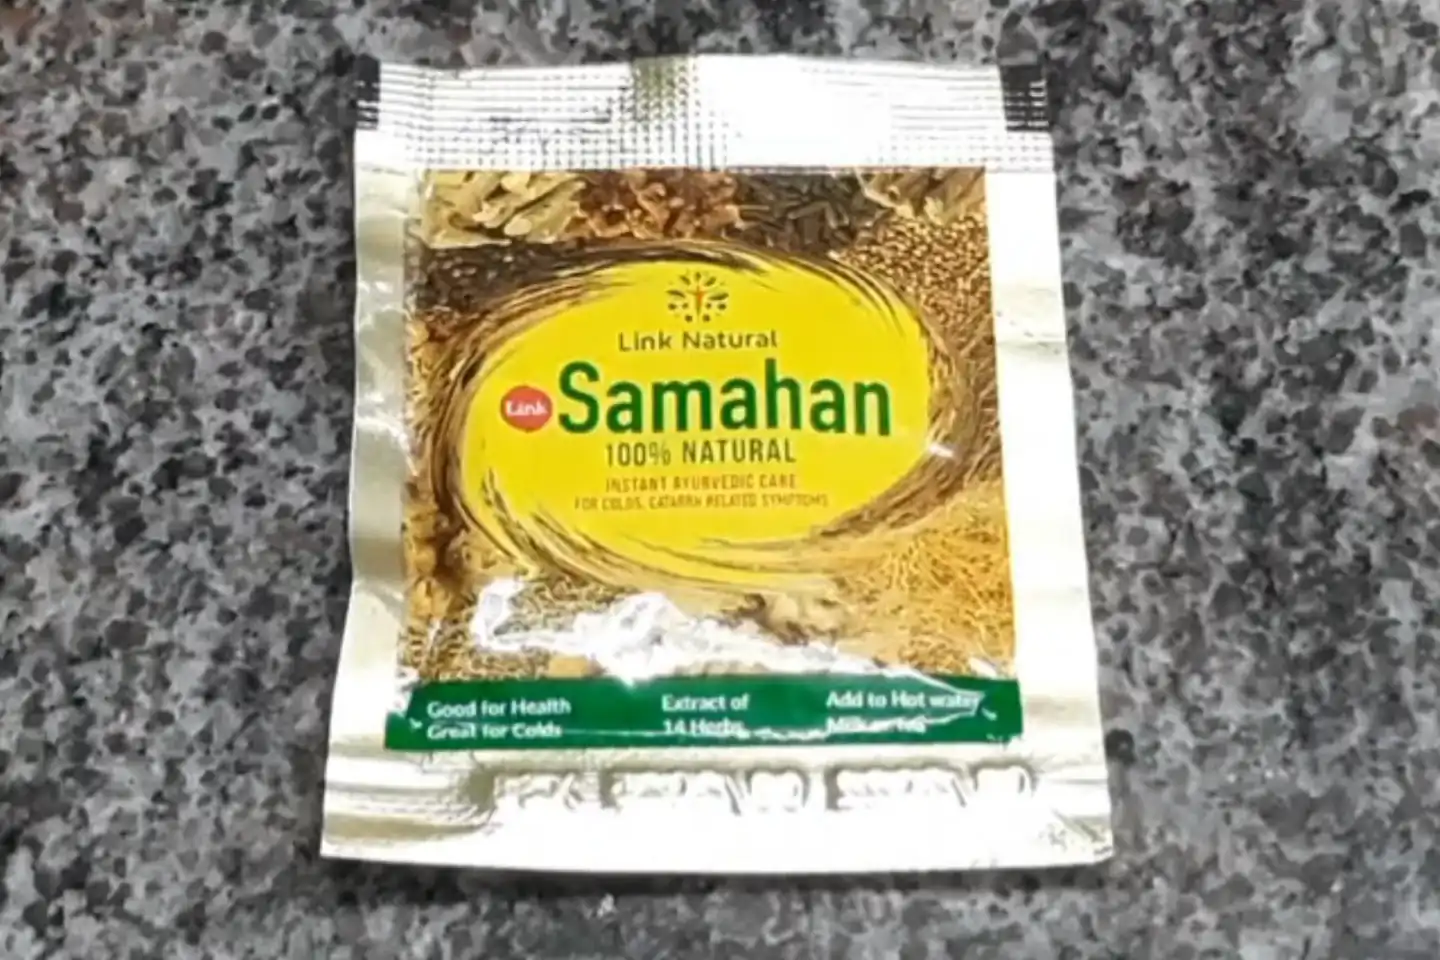 Samahan sachet